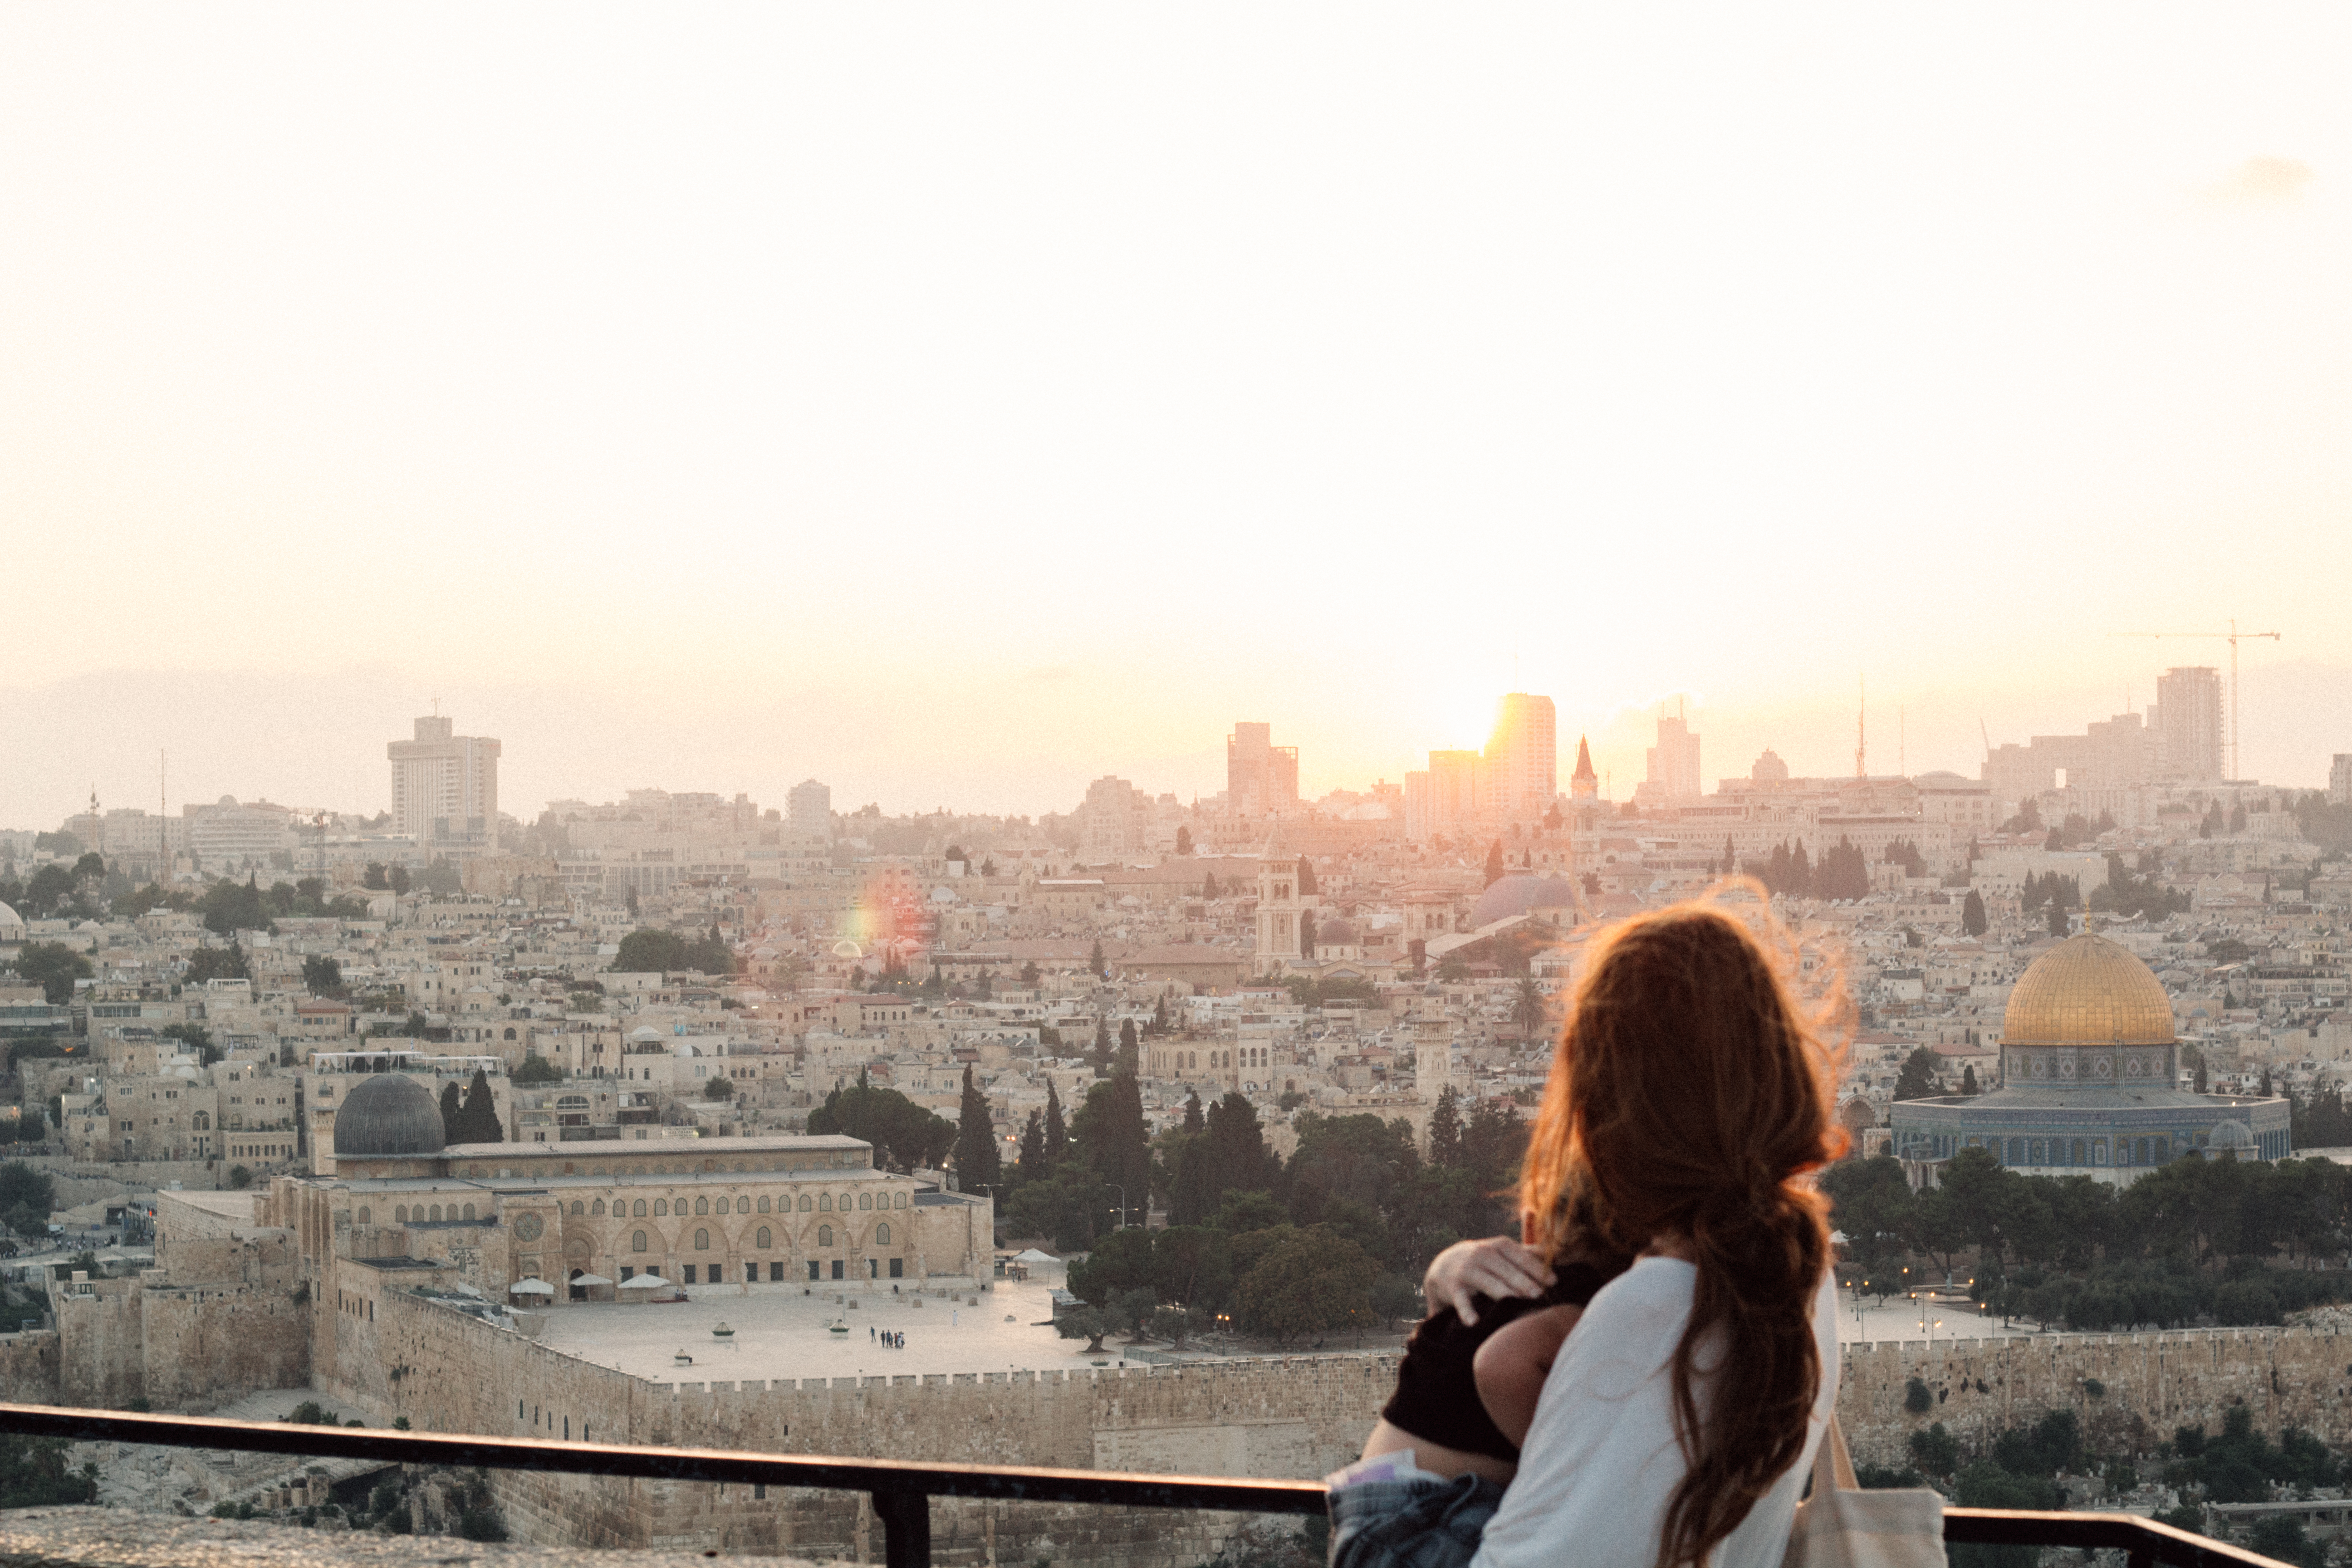 The Old City of Jerusalem at sunset